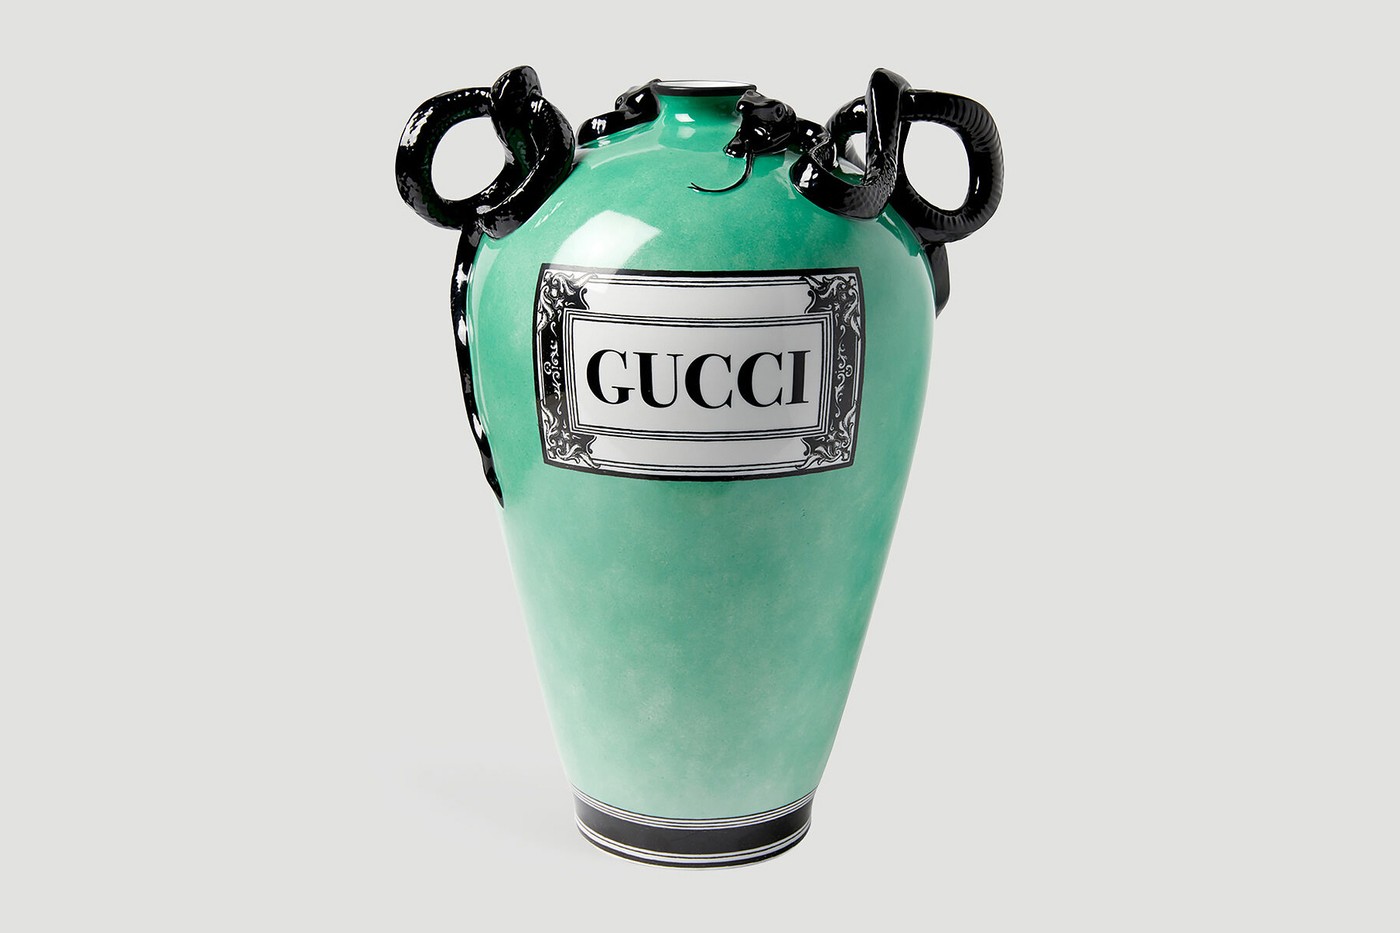 Gucci выпустил новую коллекцию фарфоровых ваз со змеями вместо ручек (фото 1)